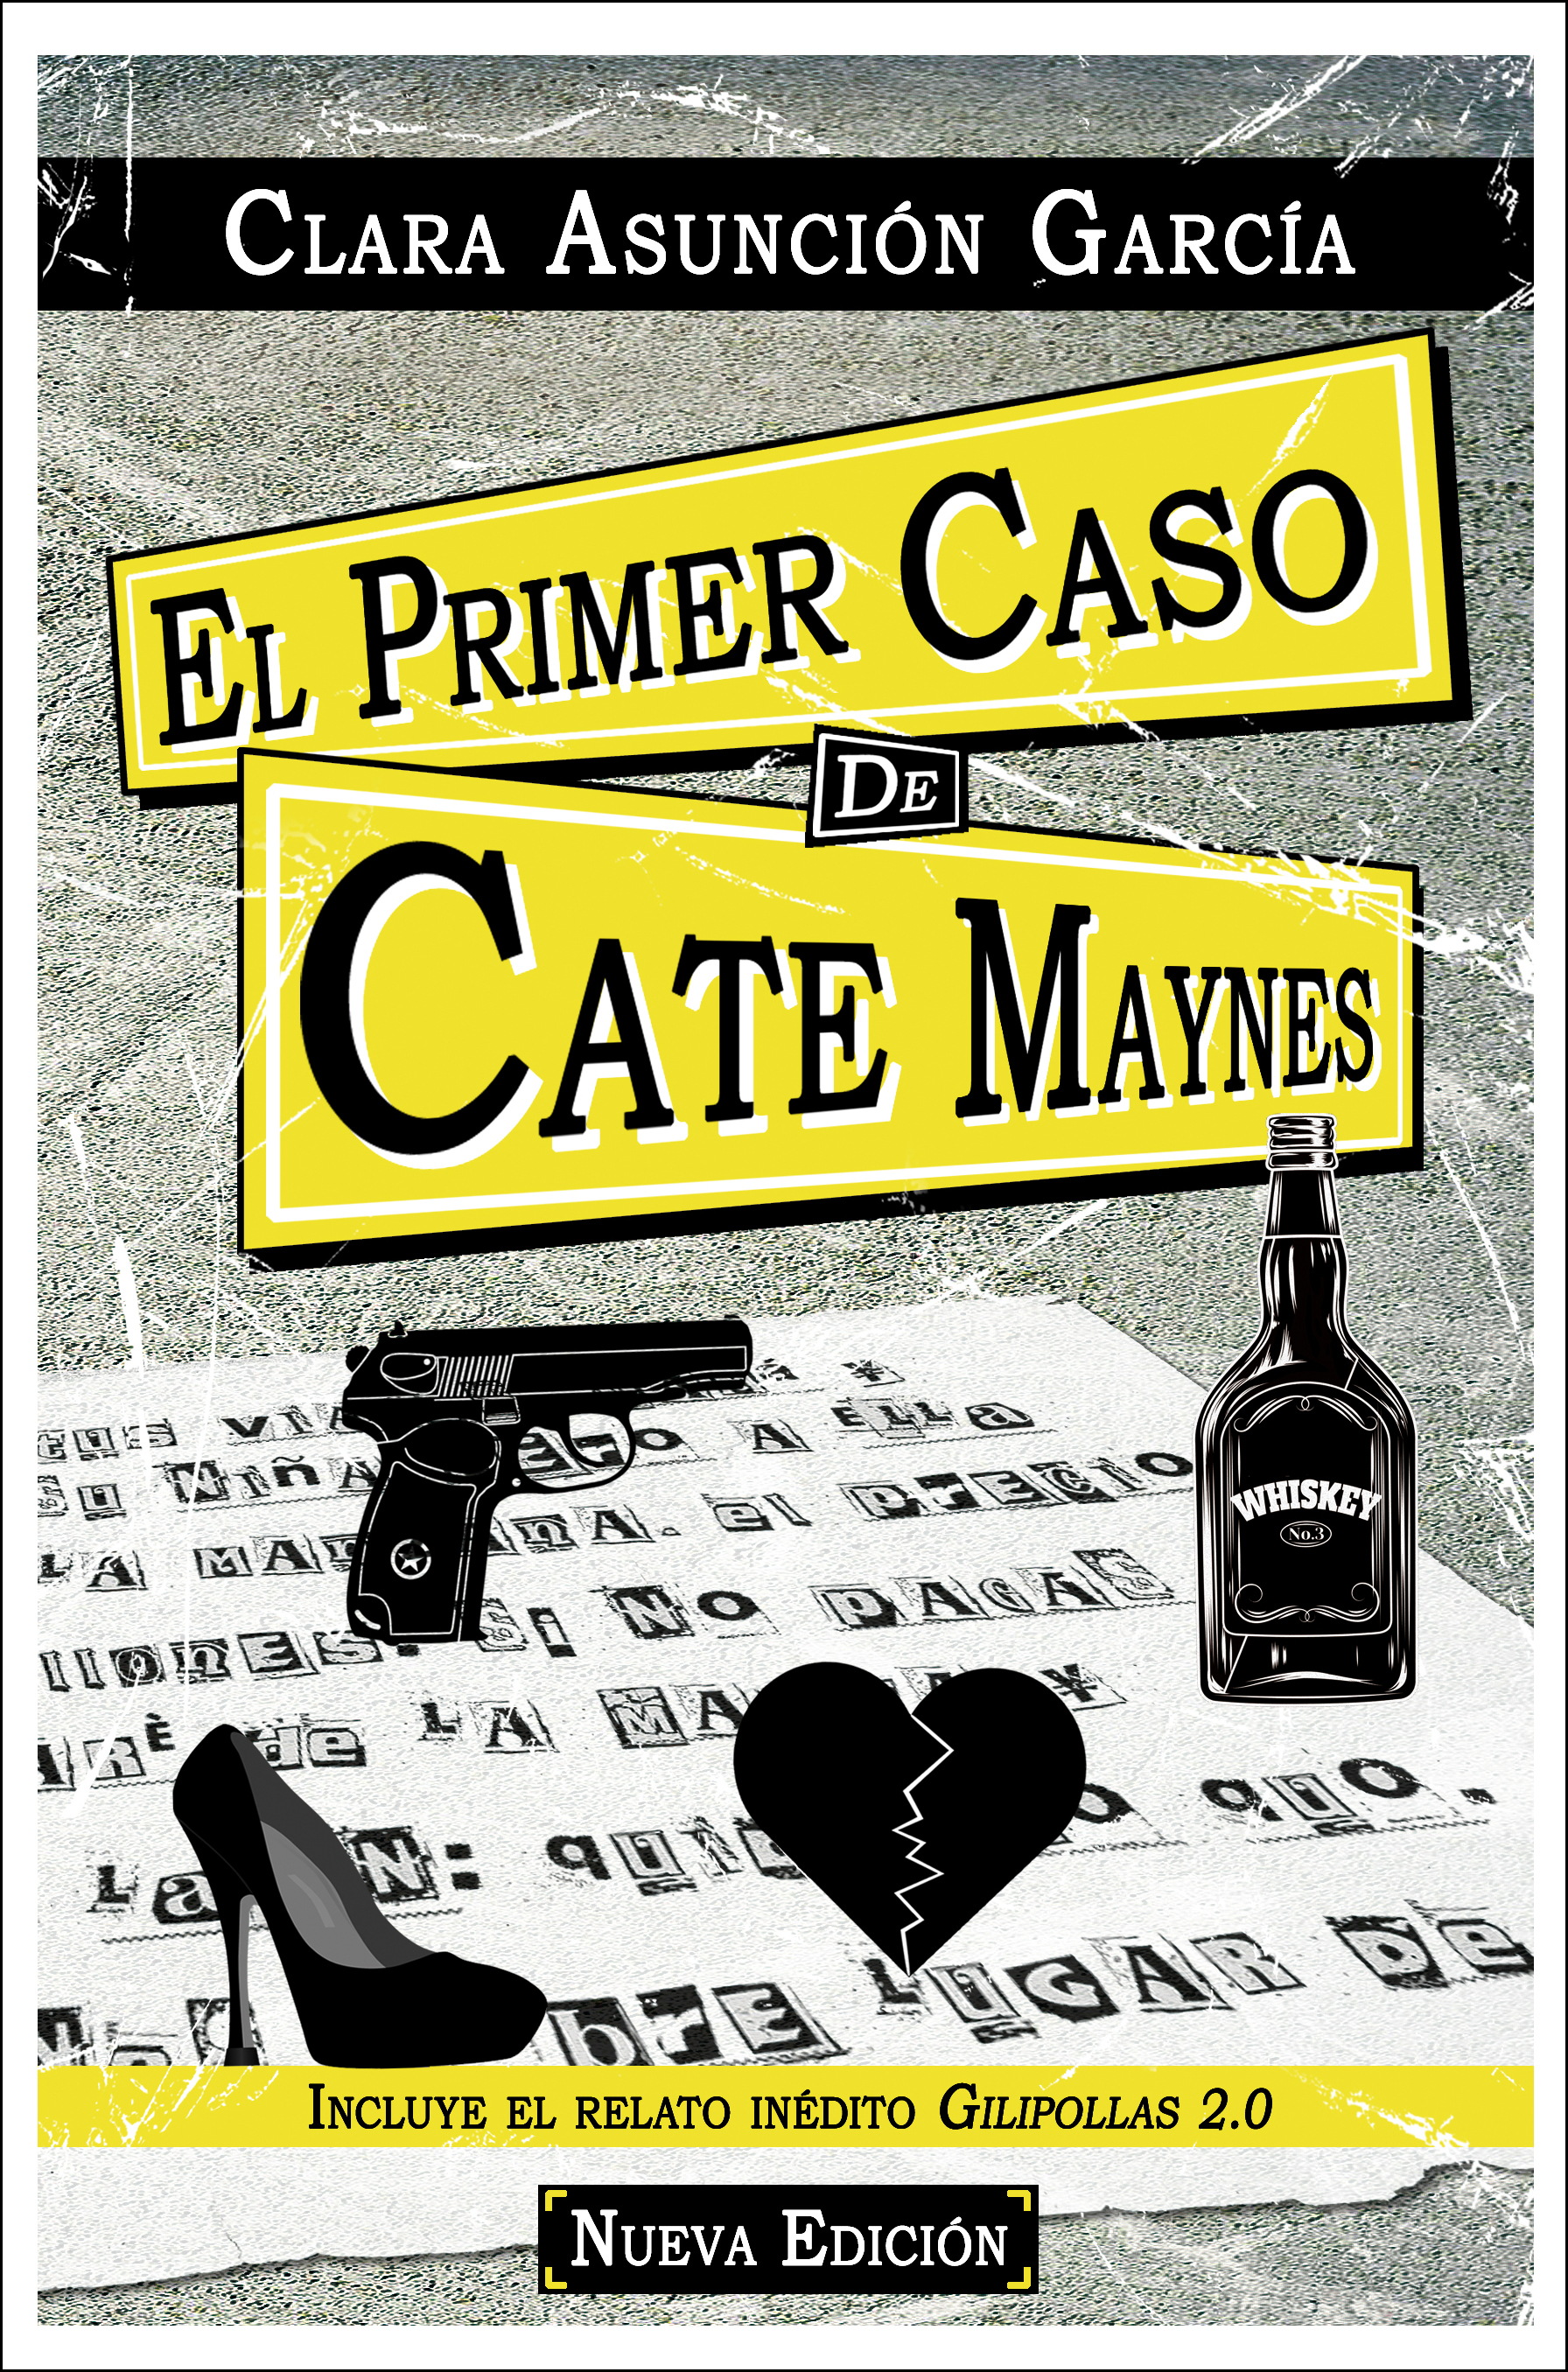 El primer caso de Cate Maynes